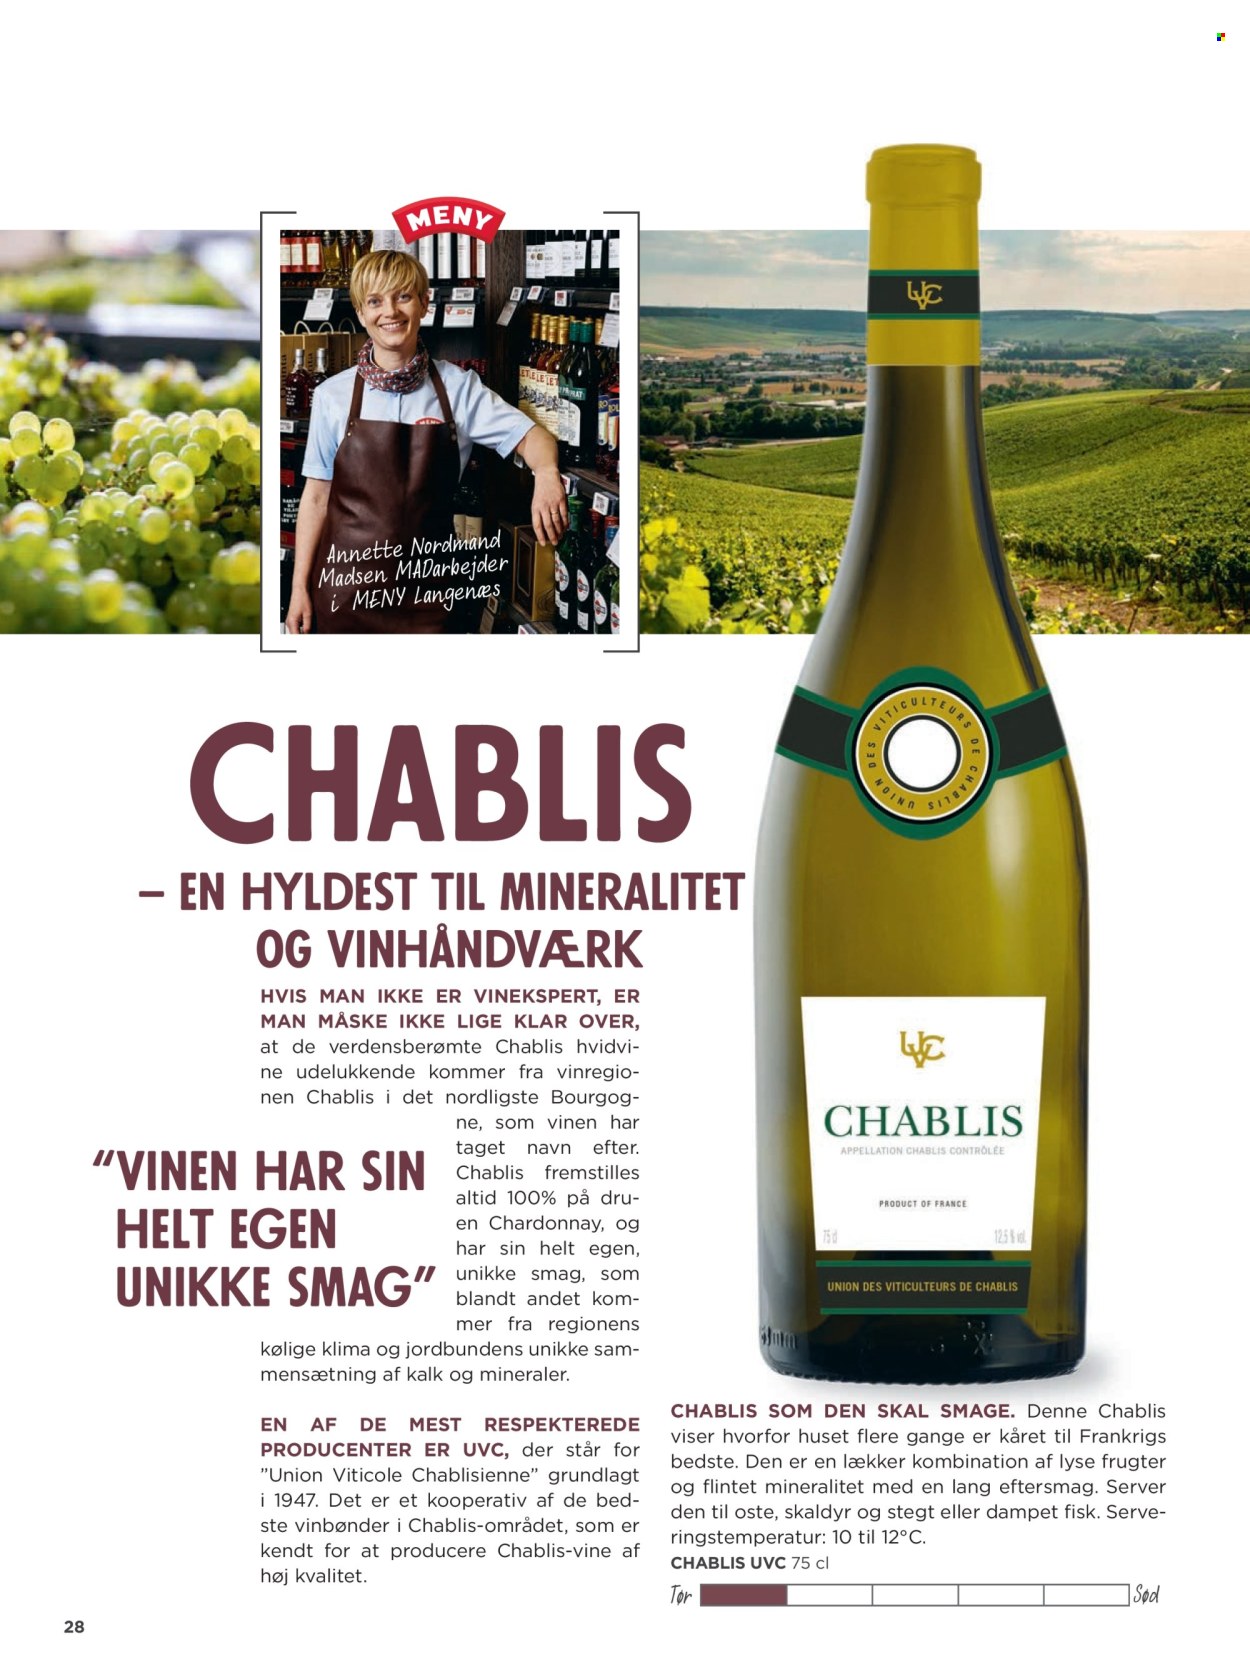 thumbnail - MENY tilbud  - tilbudsprodukter - hvidvin, Chablis, Chardonnay, vin. Side 28.